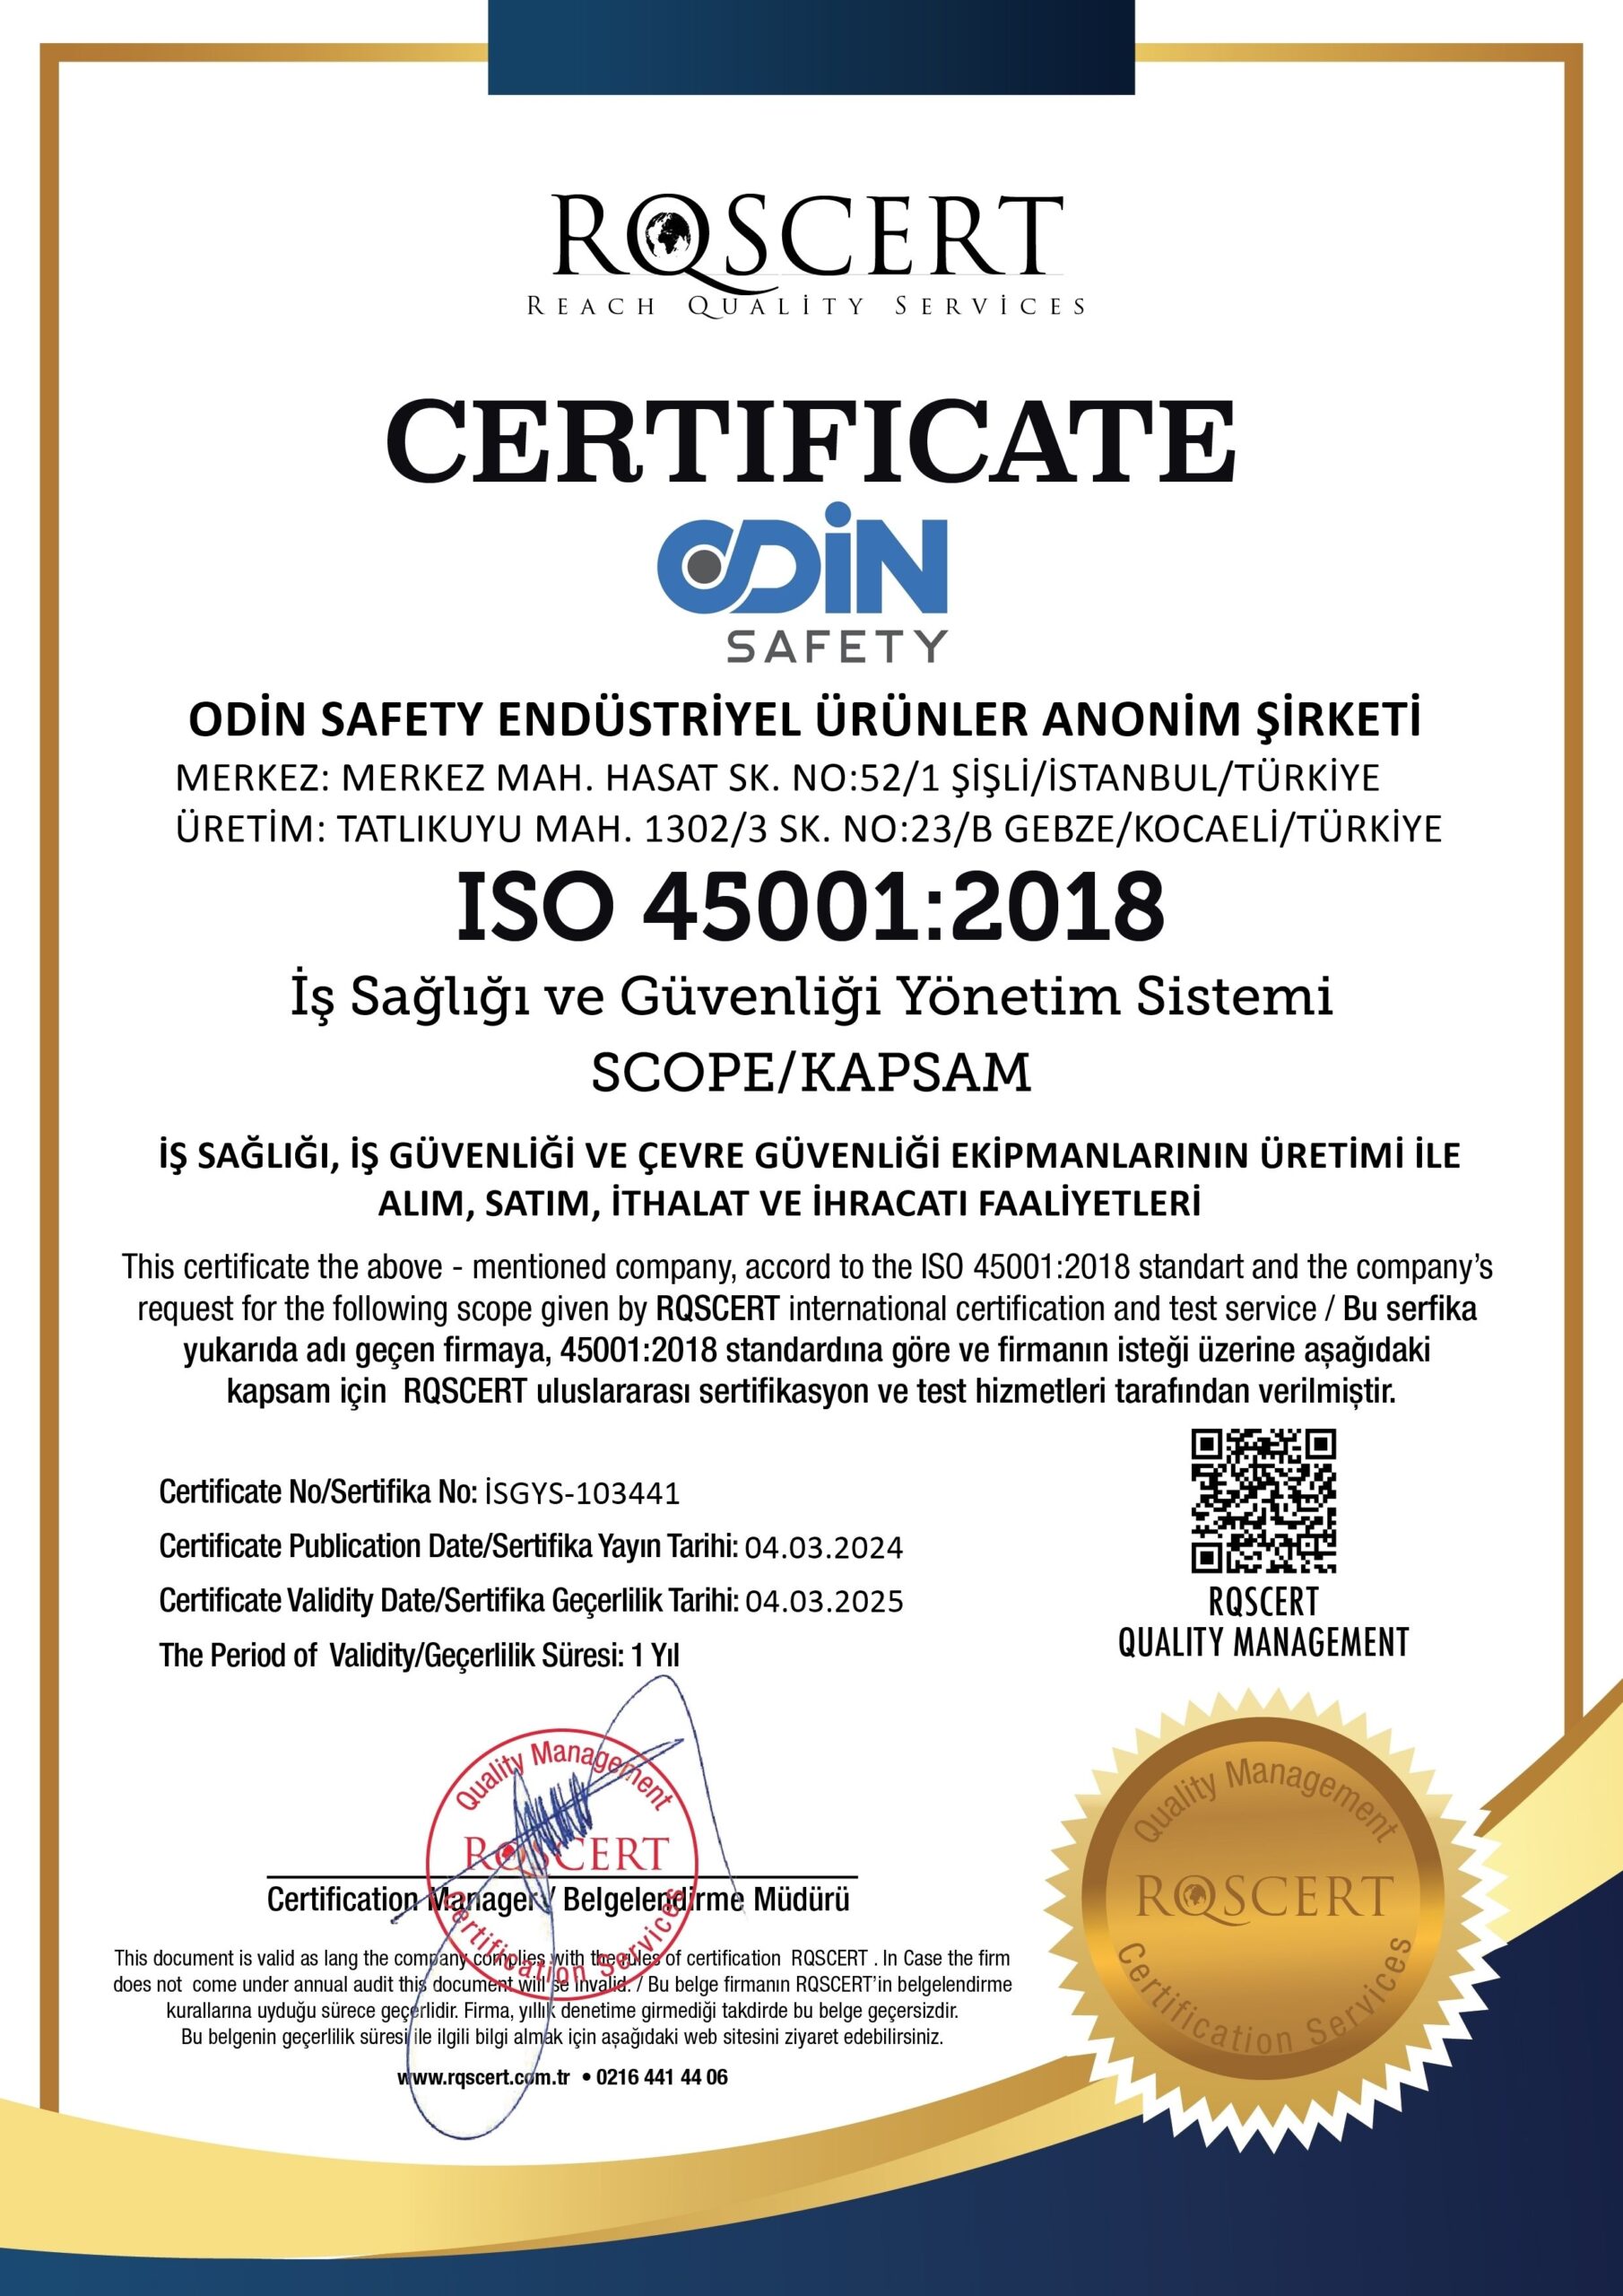 ODİN SAFETY ISO 45001